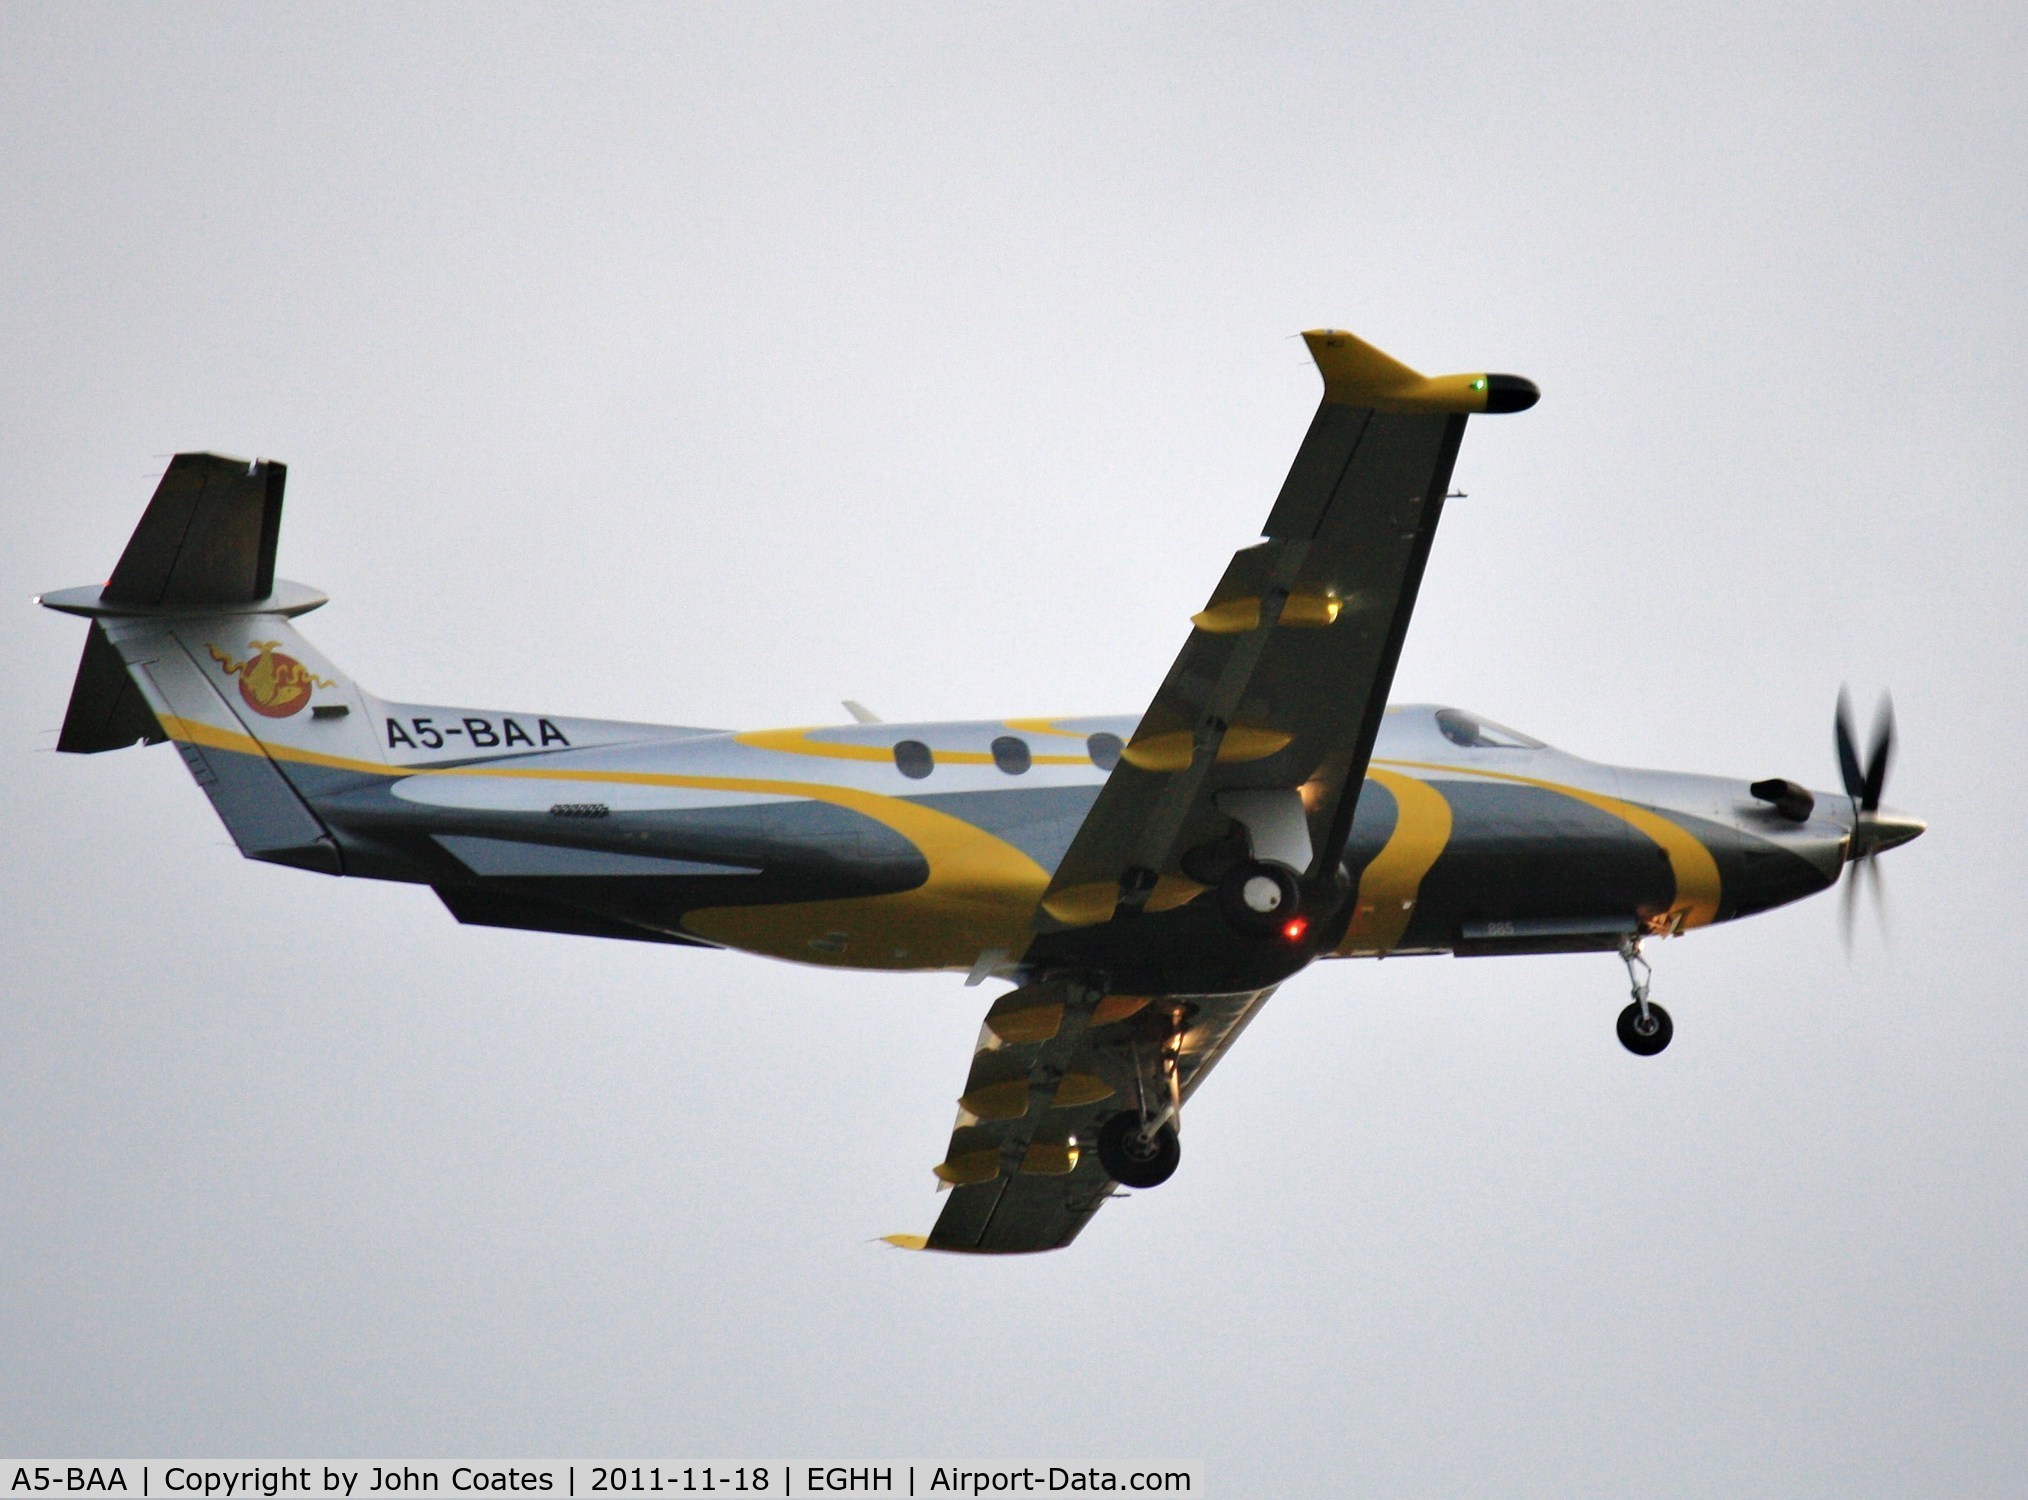 A5-BAA, 2008 Pilatus PC-12/47 C/N 885, Departing on air test